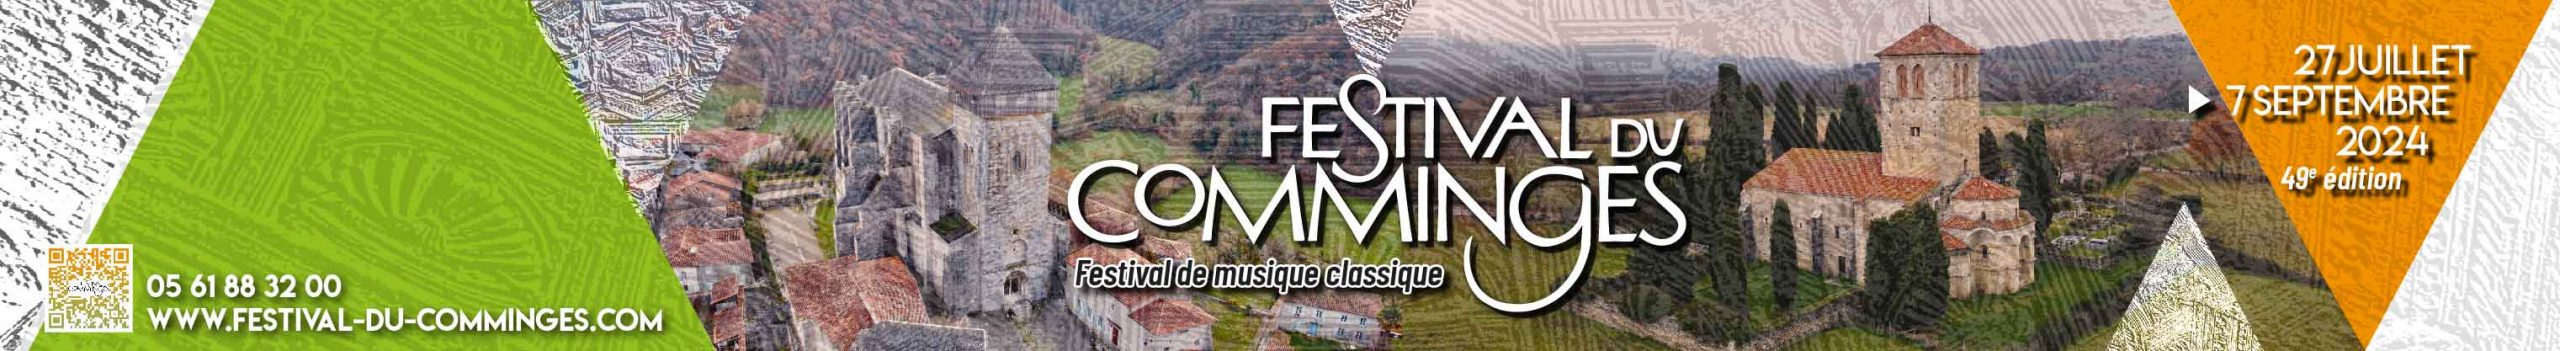 Festival Du Comminges 2024 Billetterie